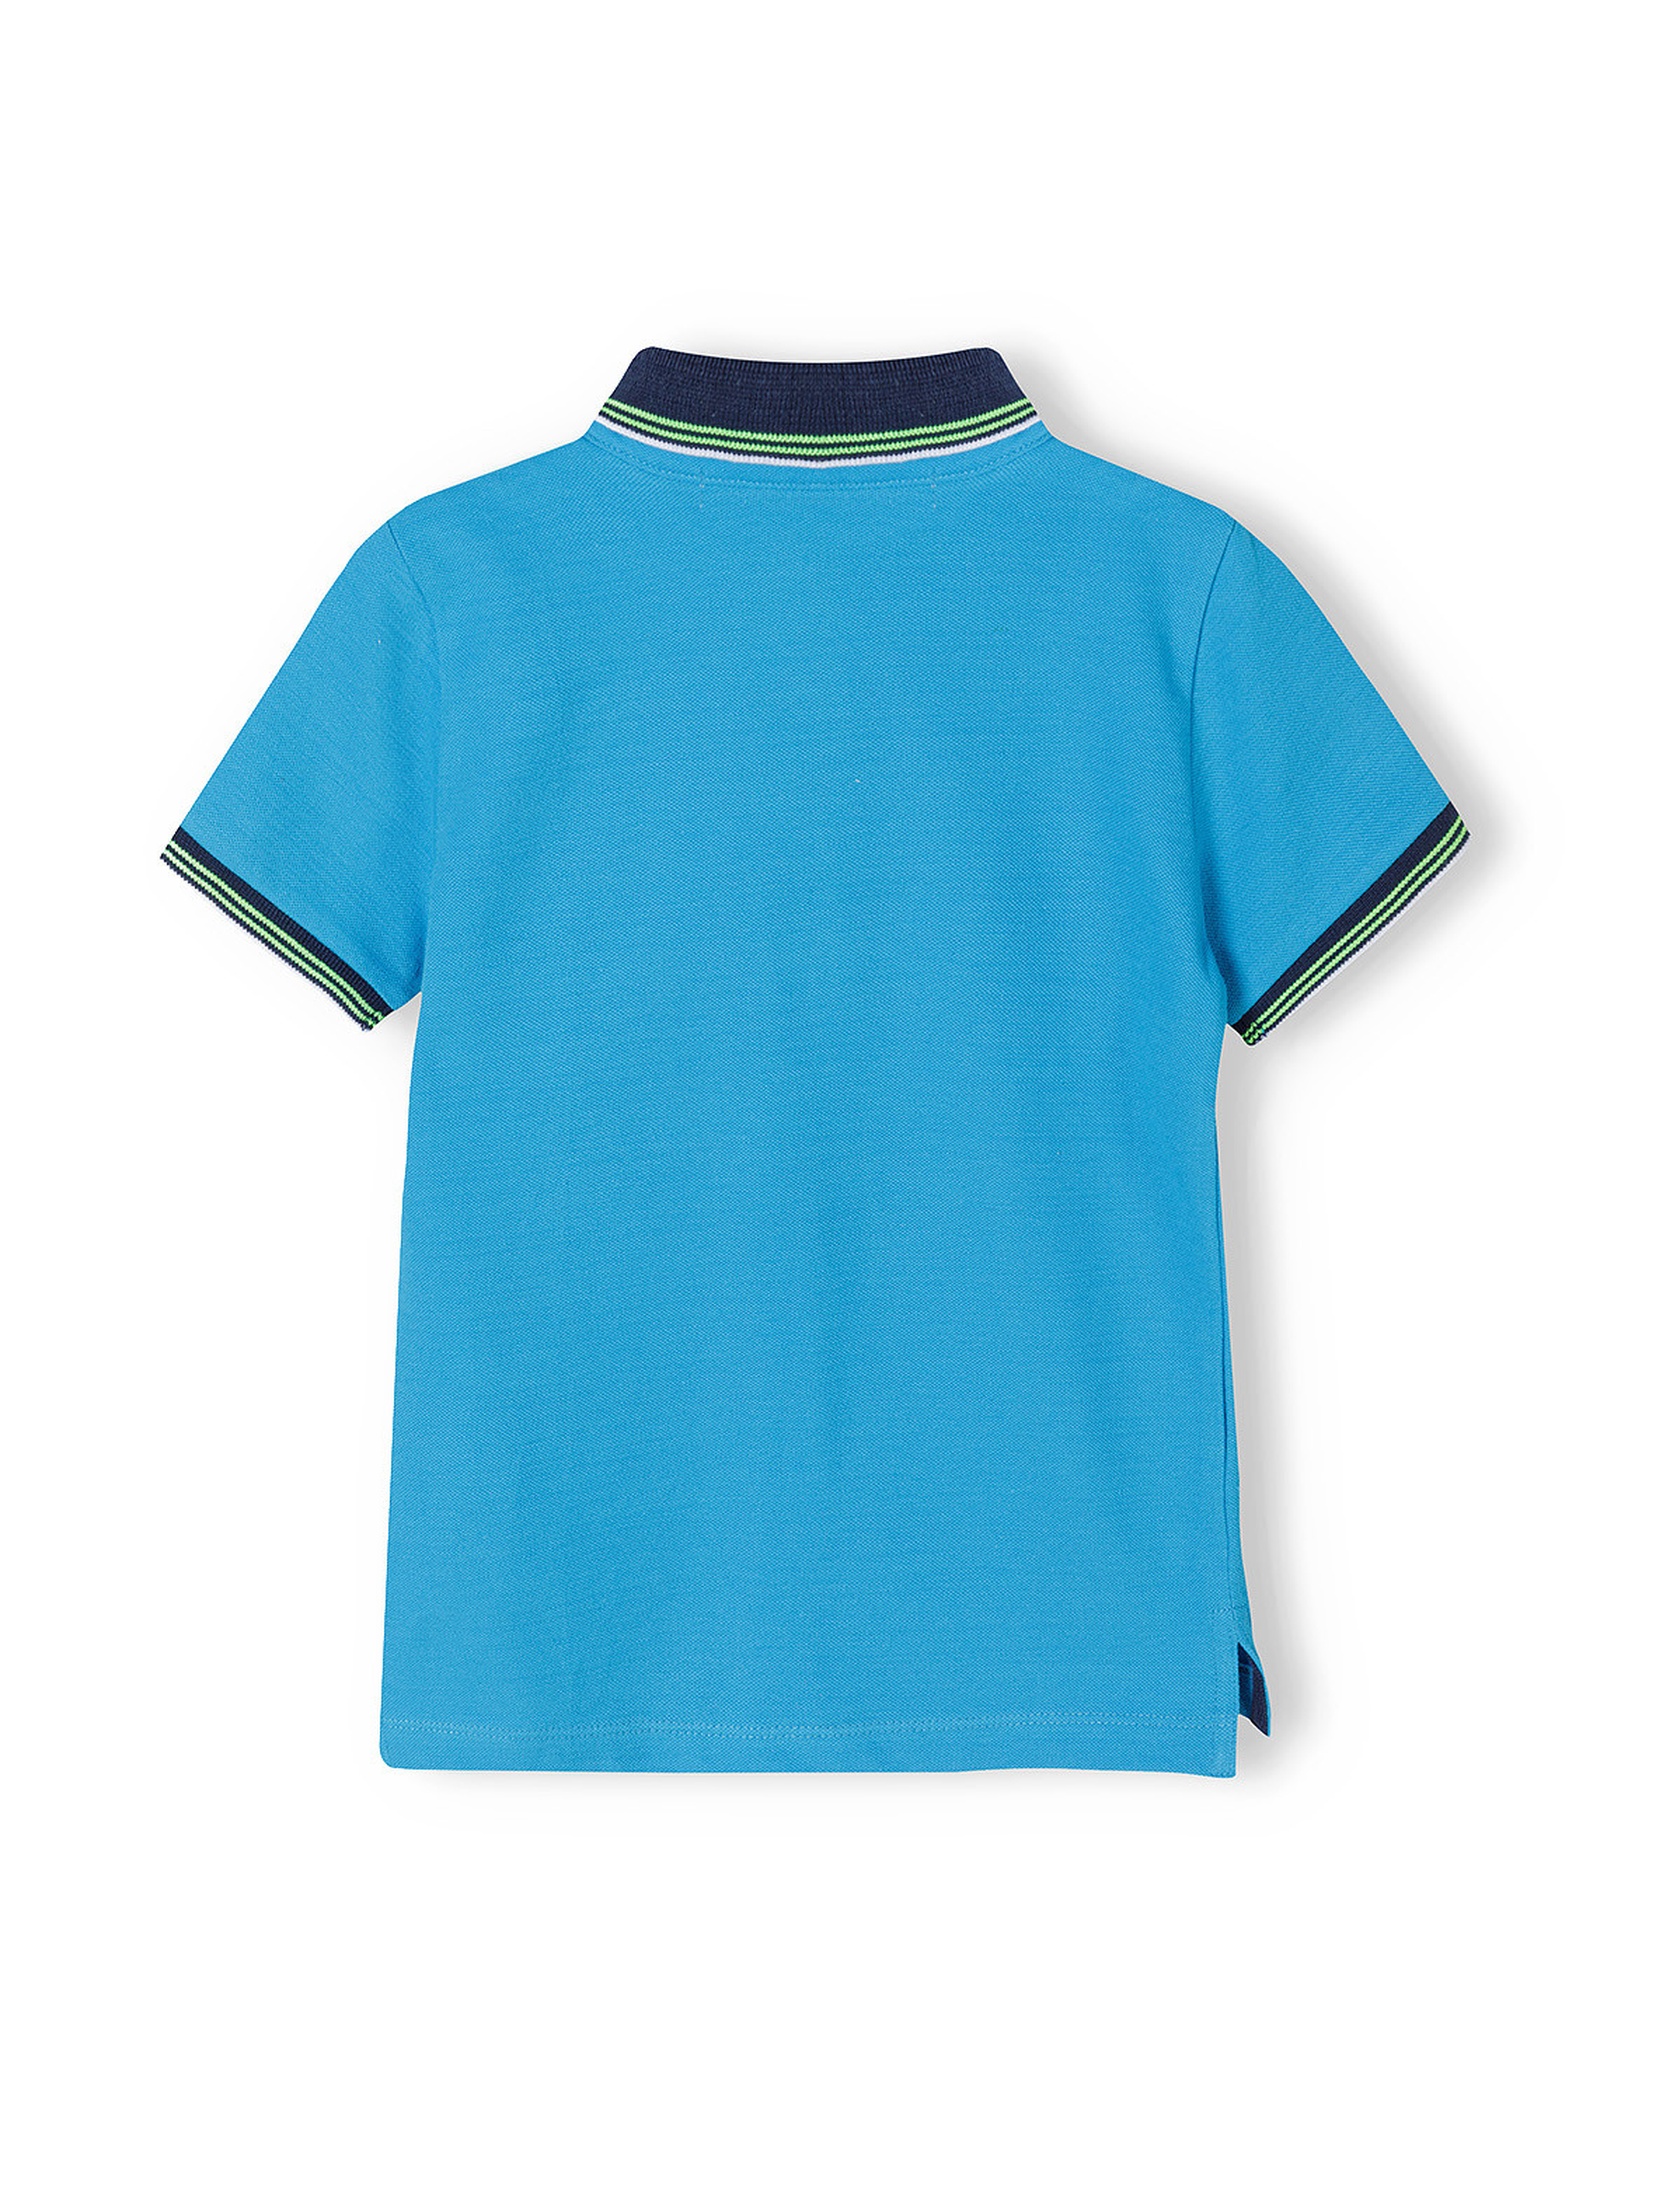 Niebieska bluzka polo z krótkim rękawem dla chłopca